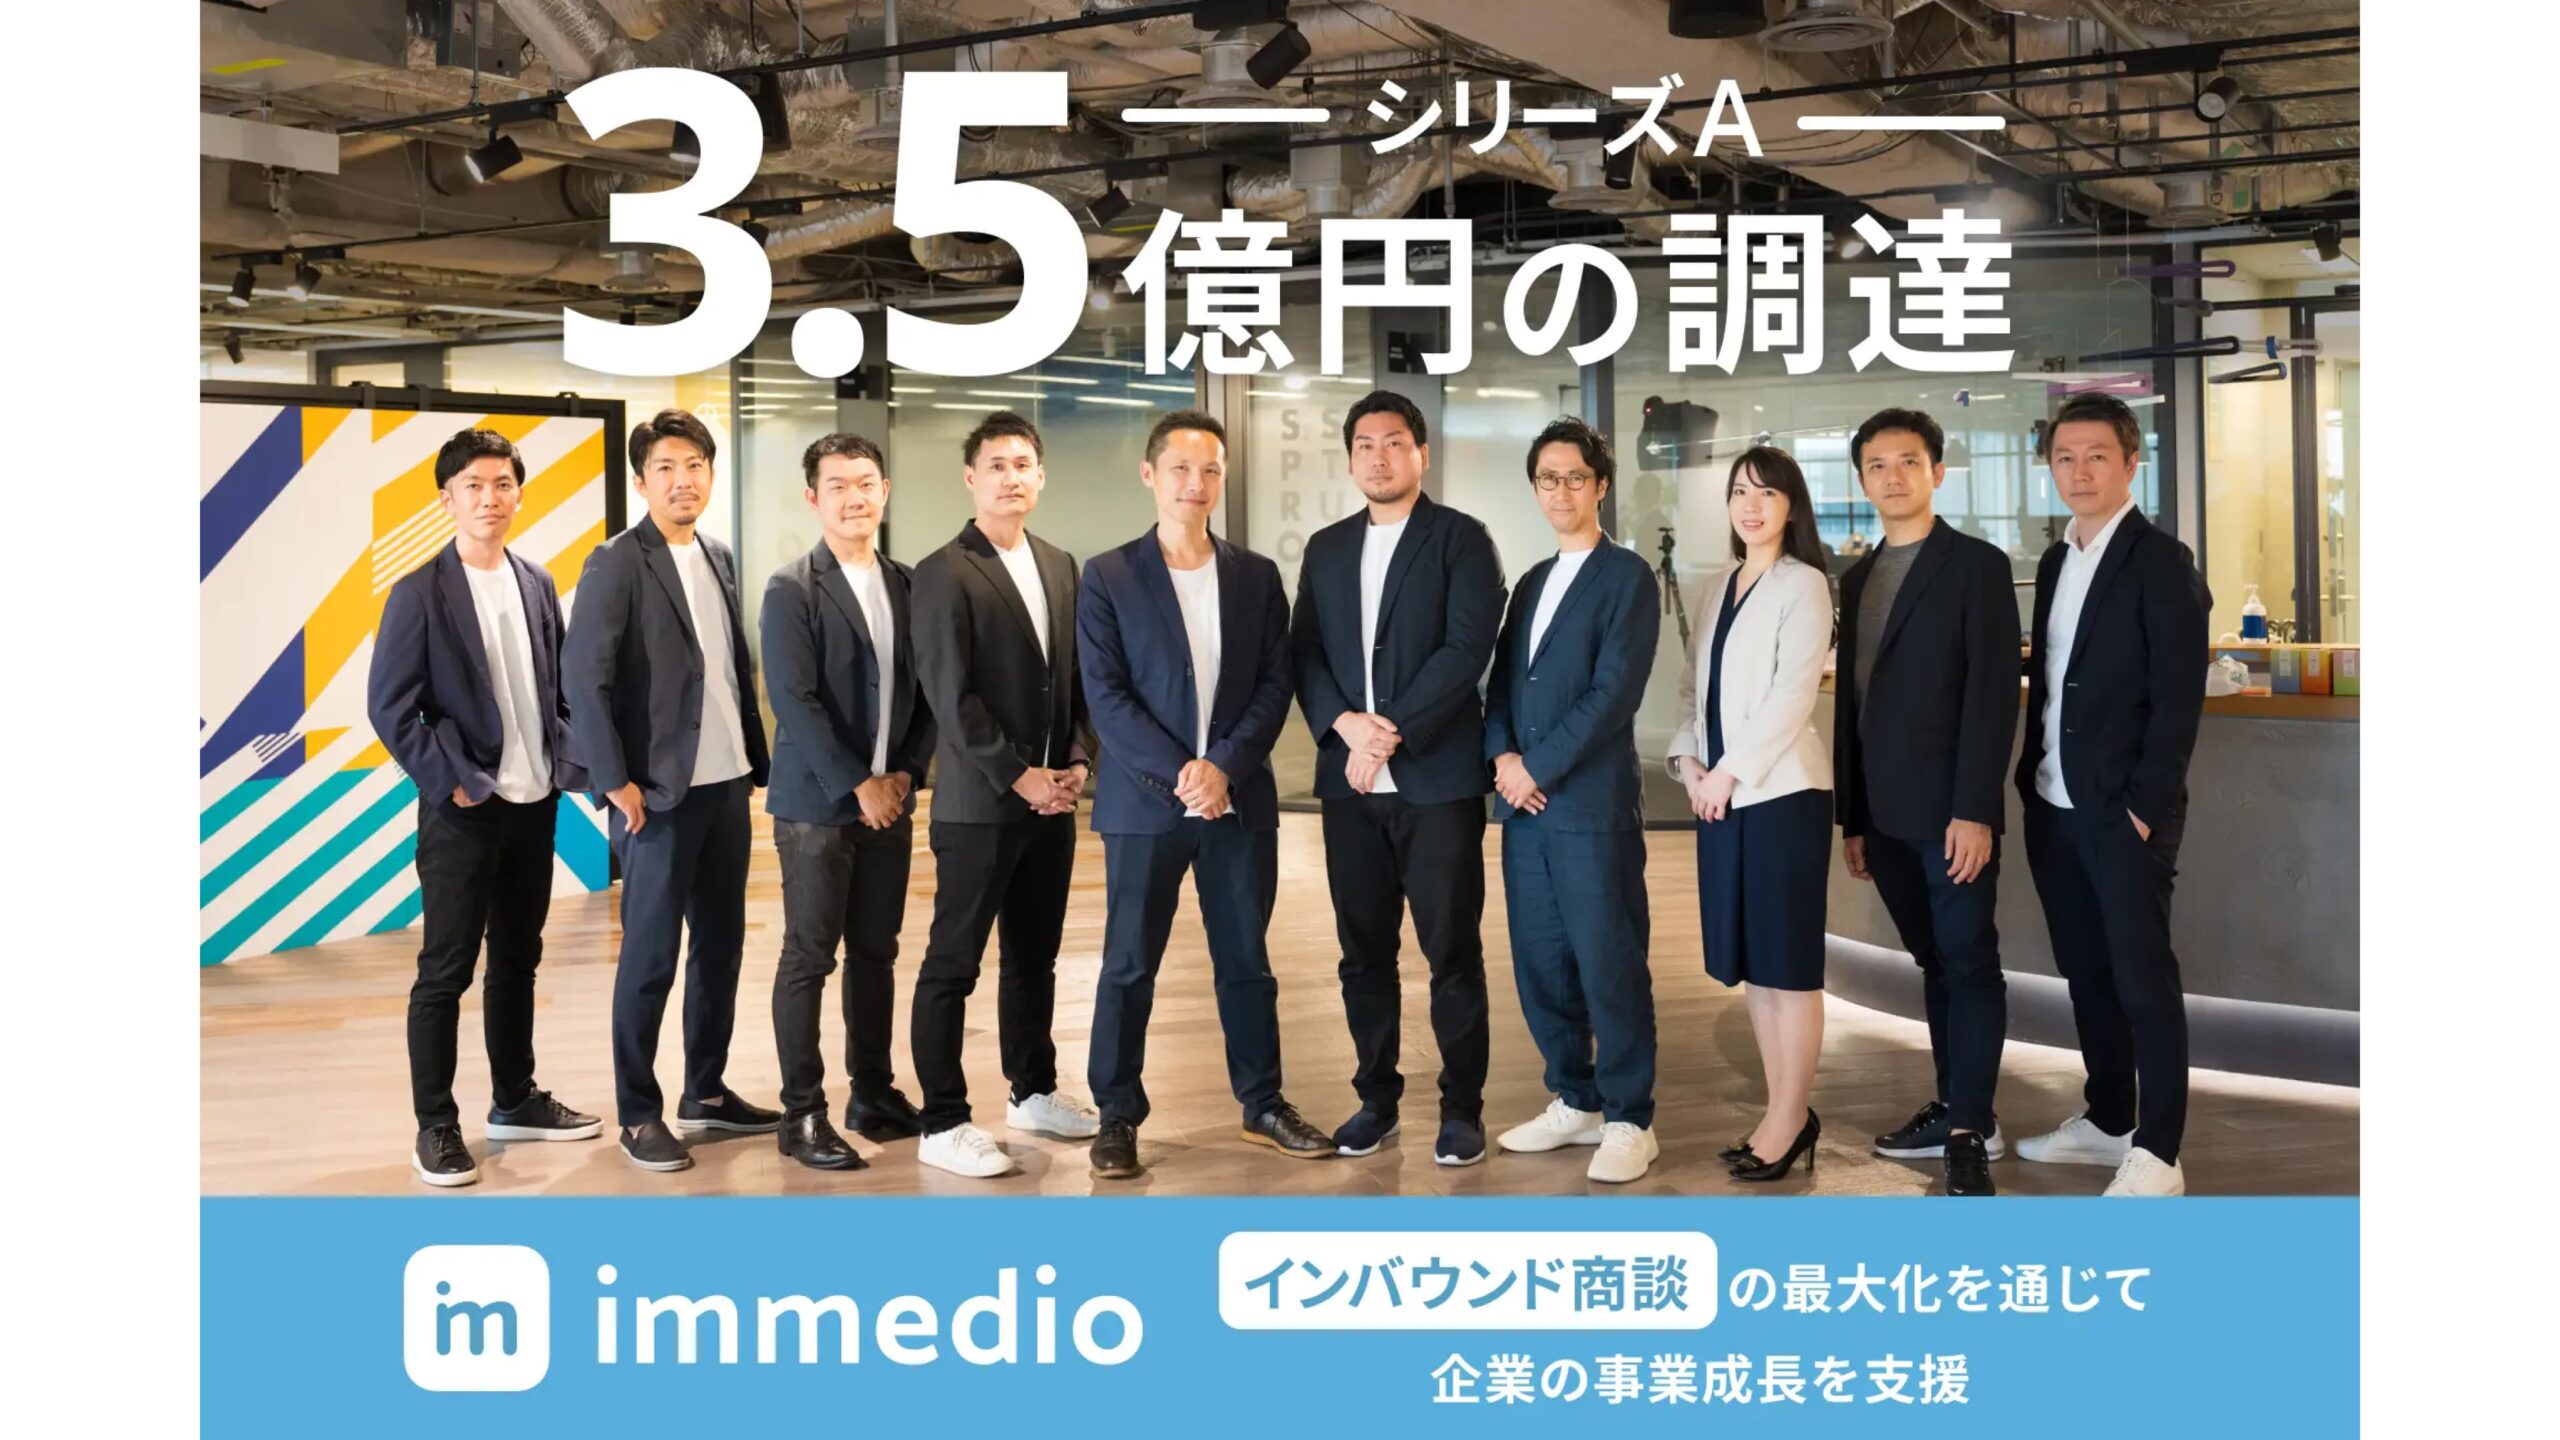 日本初のインバウンド商談SaaSの株式会社immedio、シリーズAラウンドにて3.5億円の資金調達を実施